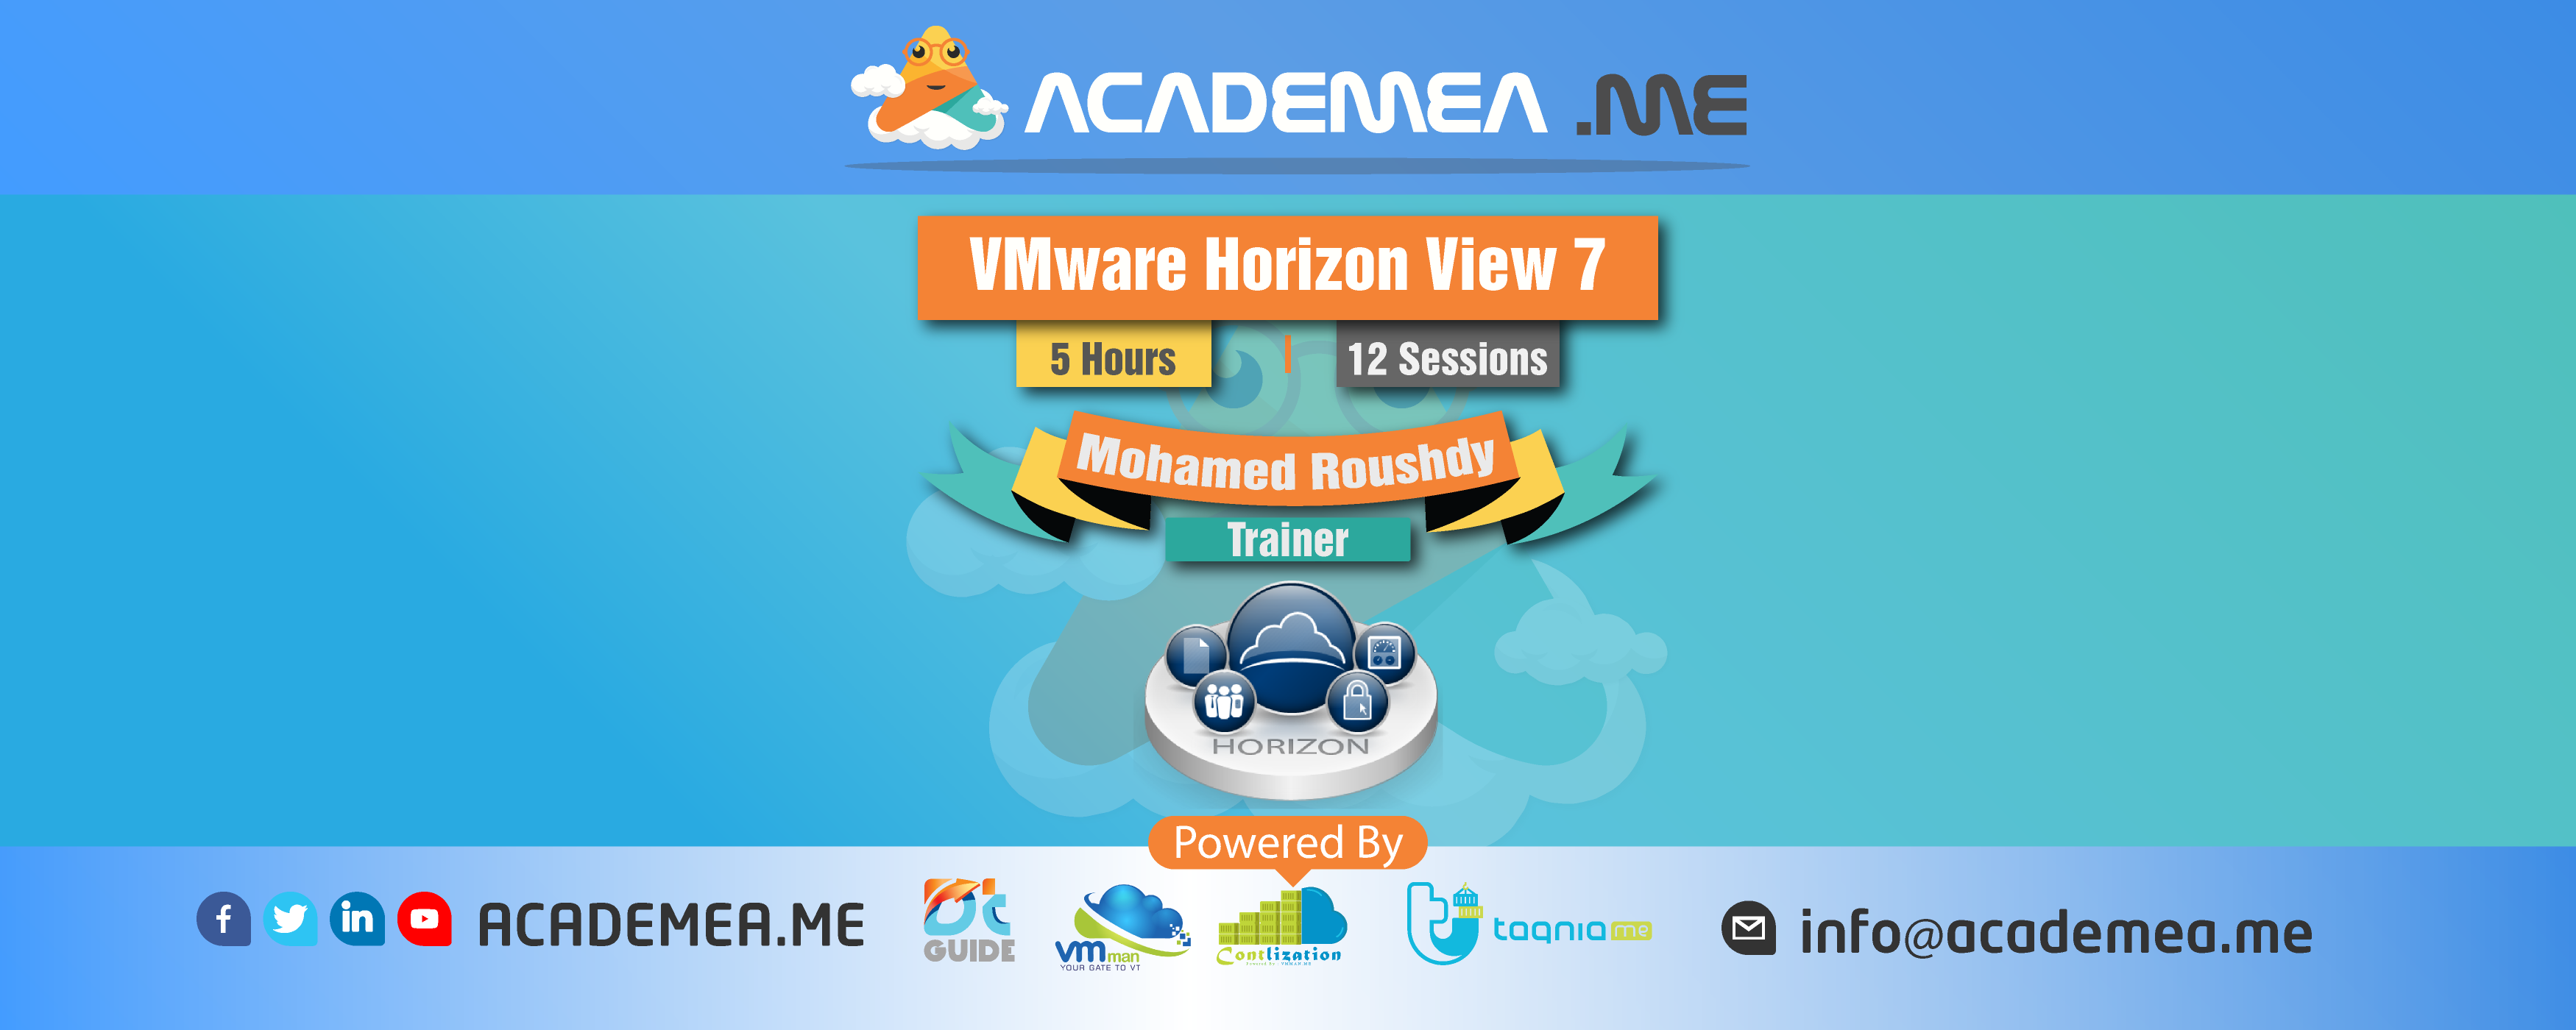 VMware Horizon View 7